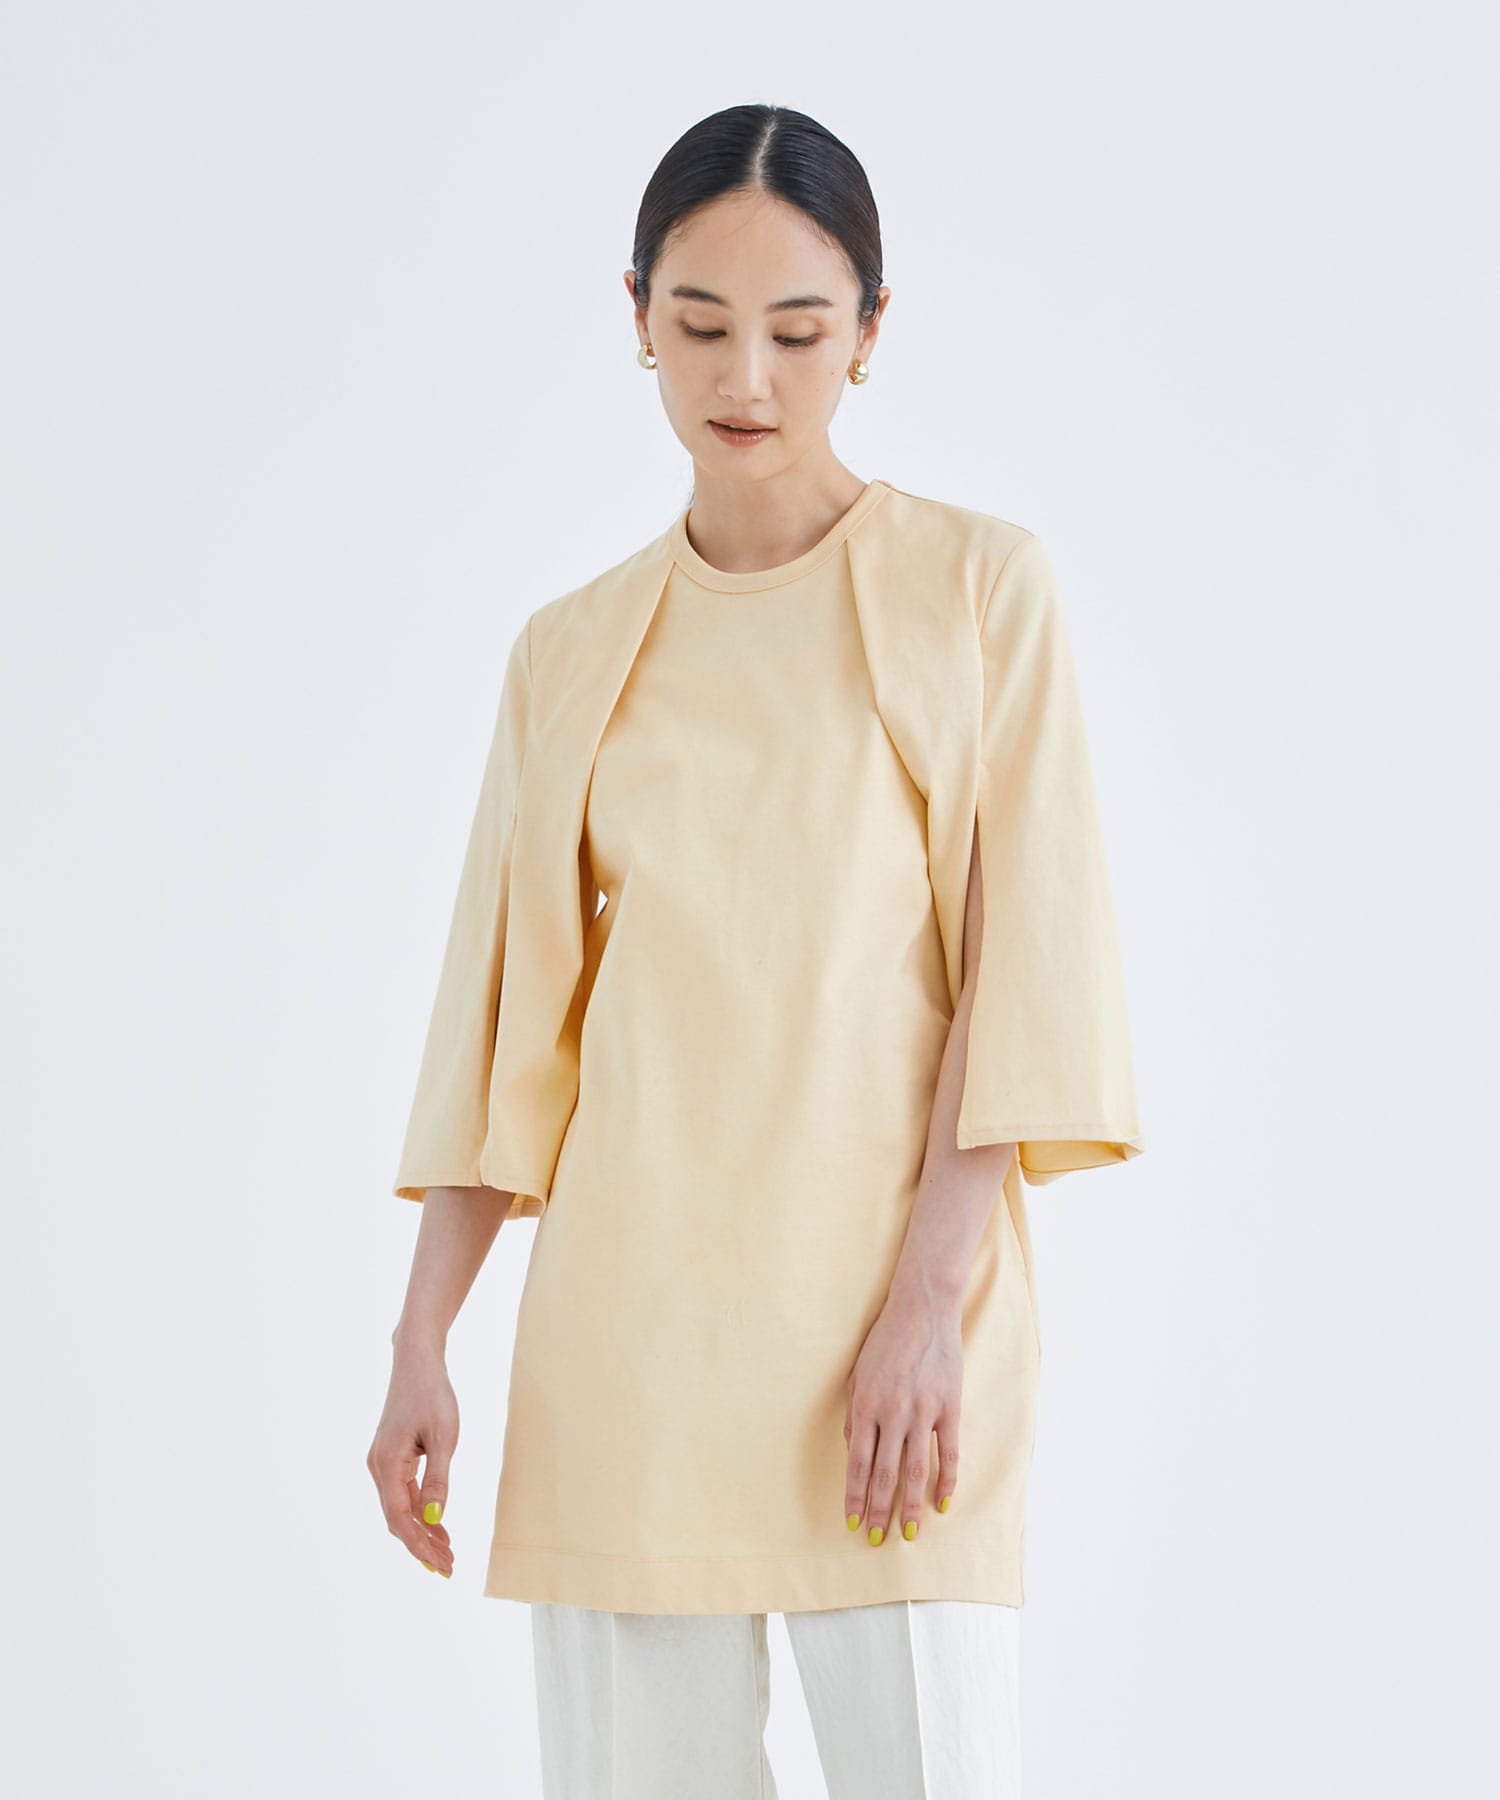 EX.slit sleeve dress Tee